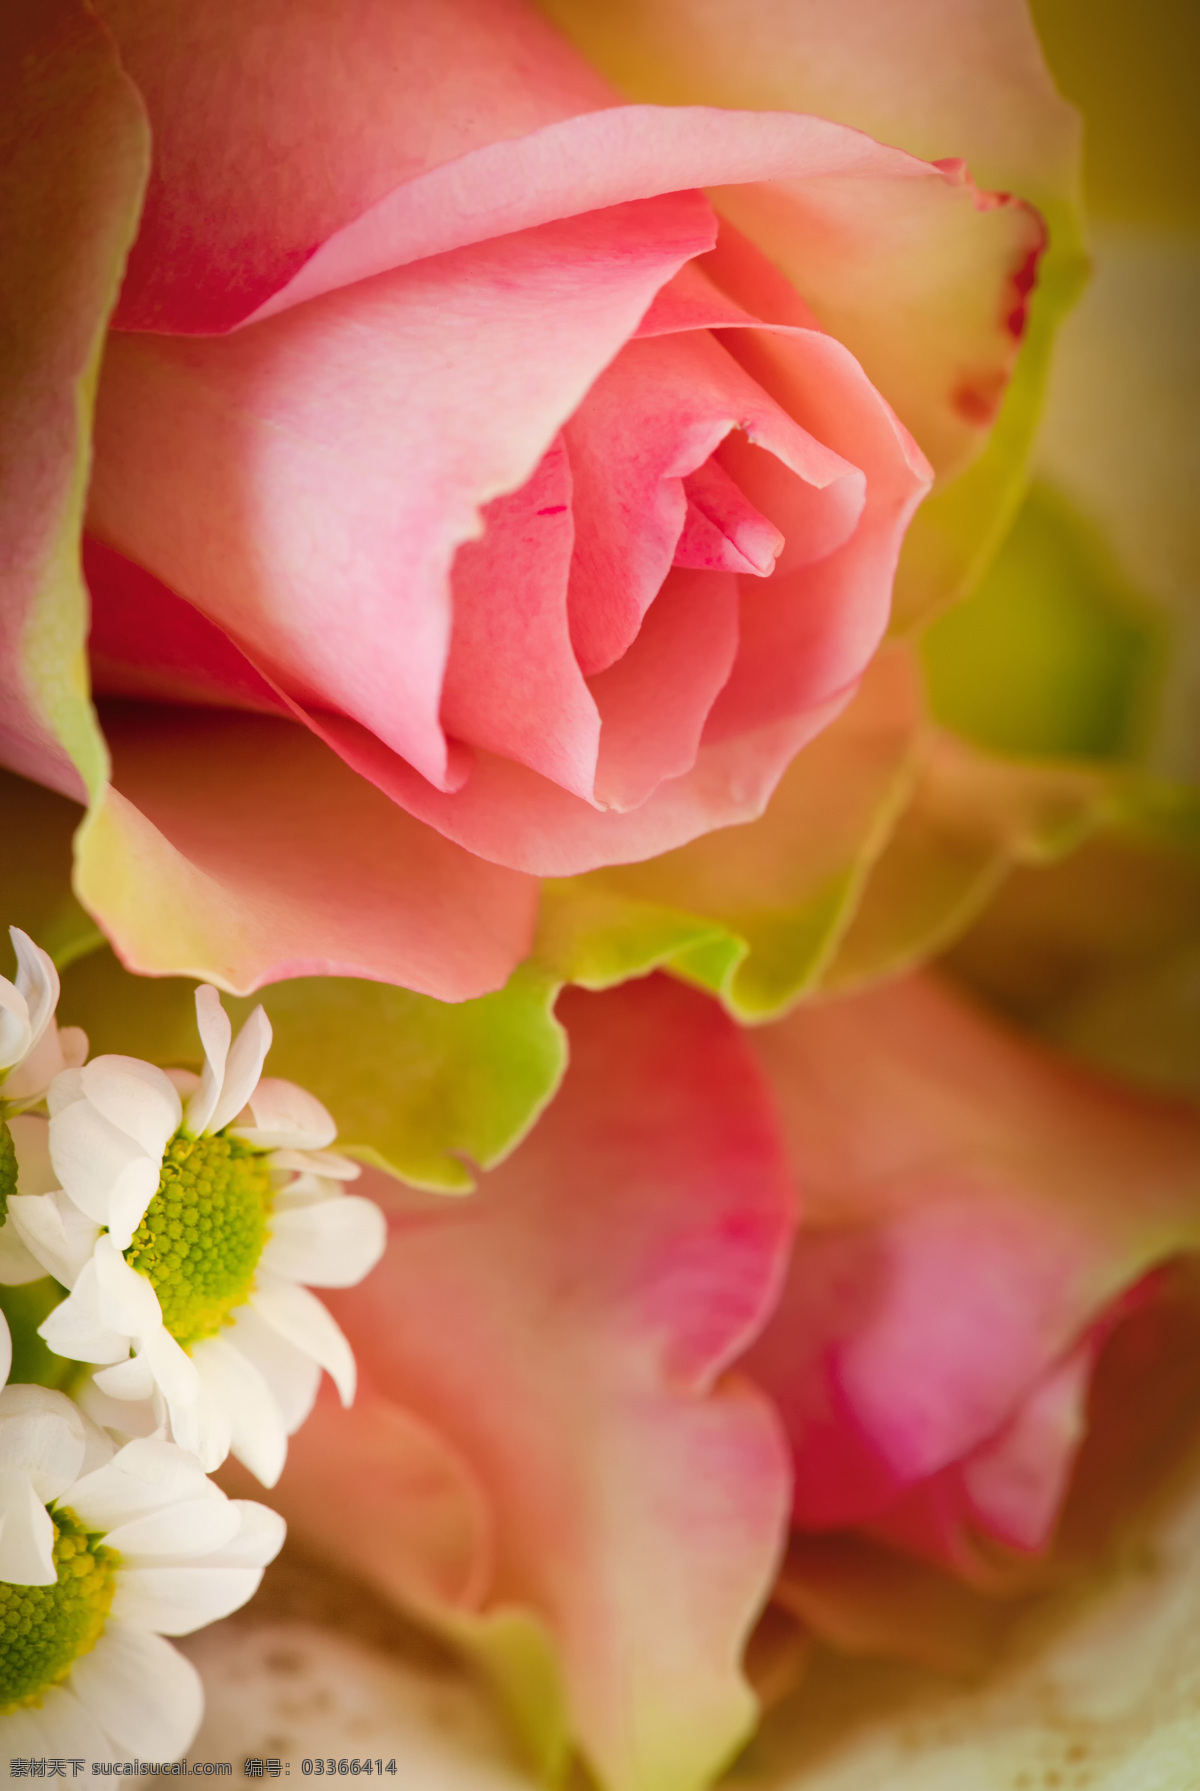 玫瑰 花束 玫瑰花束 粉红玫瑰花 美丽鲜花 鲜花背景 花朵 花卉植物 花草树木 生物世界